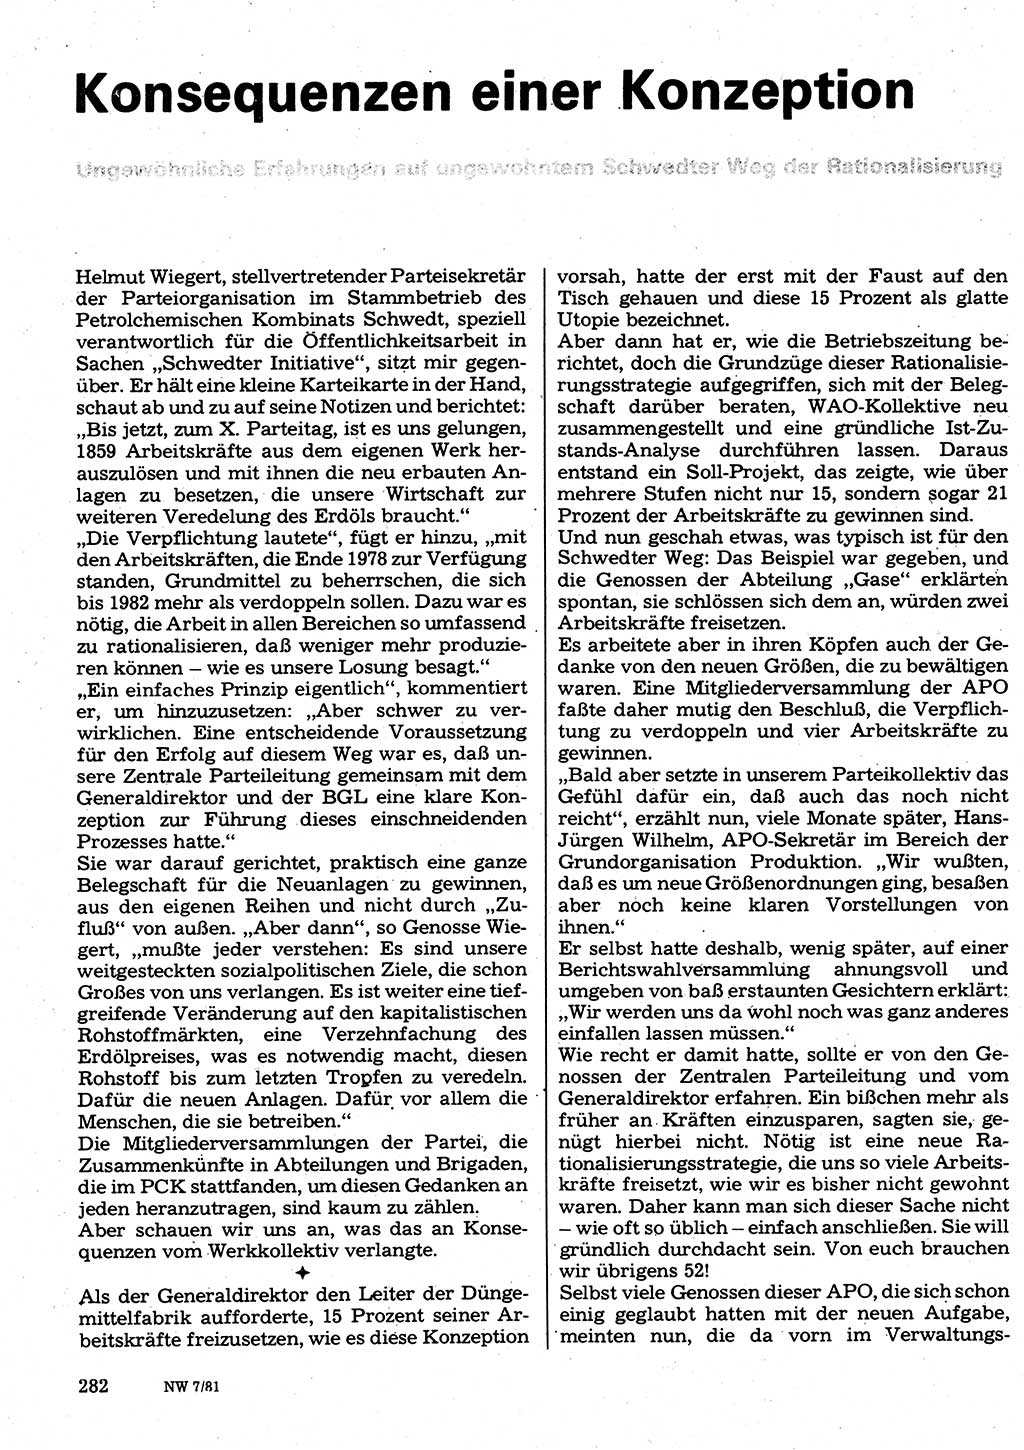 Neuer Weg (NW), Organ des Zentralkomitees (ZK) der SED (Sozialistische Einheitspartei Deutschlands) für Fragen des Parteilebens, 36. Jahrgang [Deutsche Demokratische Republik (DDR)] 1981, Seite 282 (NW ZK SED DDR 1981, S. 282)